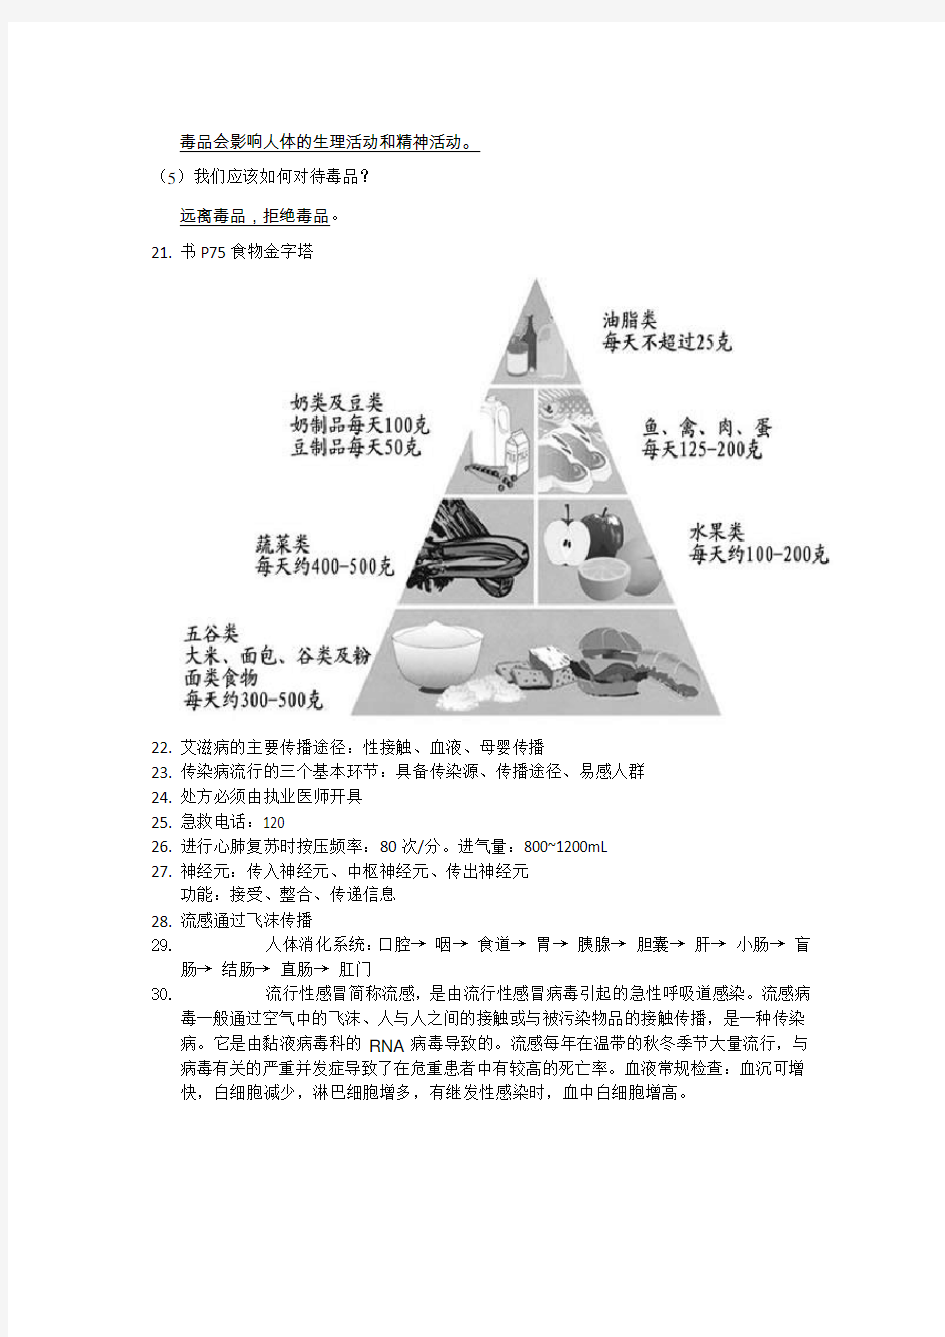 上海市八年级生命科学概念整理